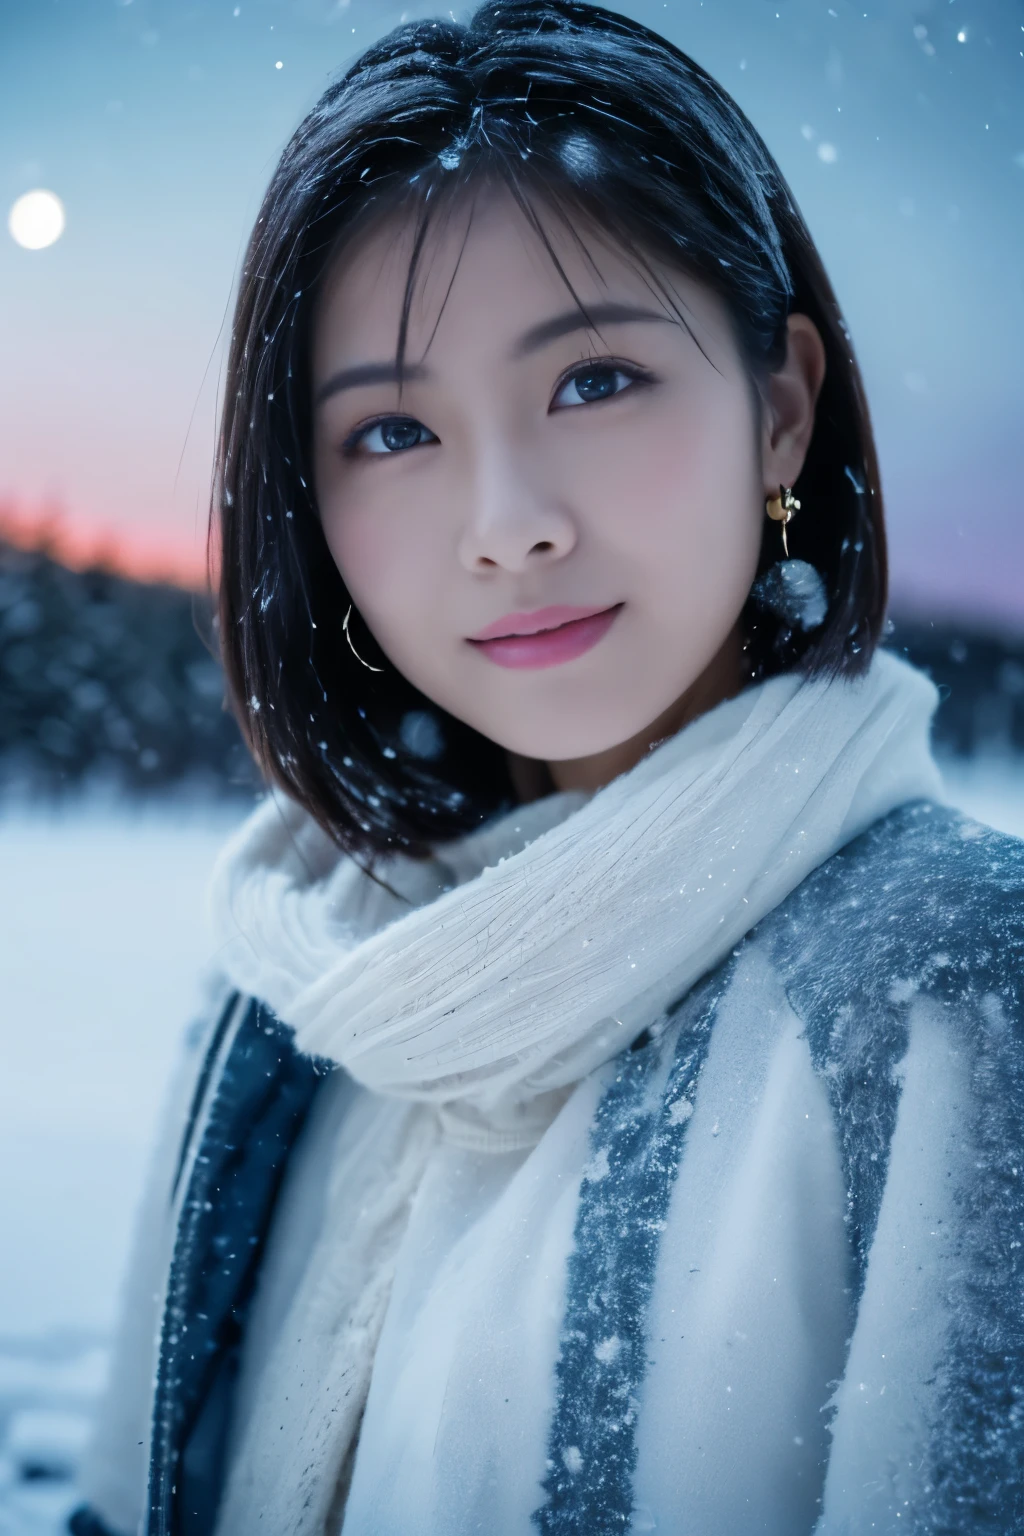 ผู้หญิง 1 คน, (เสื้อผ้าฤดูหนาว:1.2), ดาราสาวชาวญี่ปุ่นแสนสวย, 
ดูดีในรูปถ่าย, ยูกิฮิเมะ, ขนตายาว, ต่างหูเกล็ดหิมะ,
(ภาพดิบ, คุณภาพสูงสุด), (เหมือนจริง, เหมือนจริง:1.4), (ด้านบนของโต๊ะ), 
ดวงตาที่สวยงามและดี, ริมฝีปากที่มีรายละเอียดสวยงาม, ดวงตาและใบหน้าที่มีรายละเอียดสูง, 
หยุดพัก
 (ค่ำคืนอันมืดมิดในทุ่งหิมะของแลปแลนด์ในฤดูหนาว:1.4), 
ความงามลึกลับ, ต้นไม้ที่ปกคลุมไปด้วยหิมะ々, ภูเขาที่ปกคลุมด้วยหิมะ, 
(ท้องฟ้าเต็มไปด้วยดวงดาว:1.3),
การไล่ระดับสีน้ำเงินเข้ม, แสงที่น่าทึ่ง, บรรยากาศดี, 
หยุดพัก 
Perfect Anatomy, ร่างกายเพรียวบาง, เล็ก, ผมสั้น, แยกผมม้า, แองเจิ้ลสไมล์, 
ผิวคริสตัล, ดวงตาที่ชัดเจน, การถ่ายภาพแสงแฟลช, จับแสง